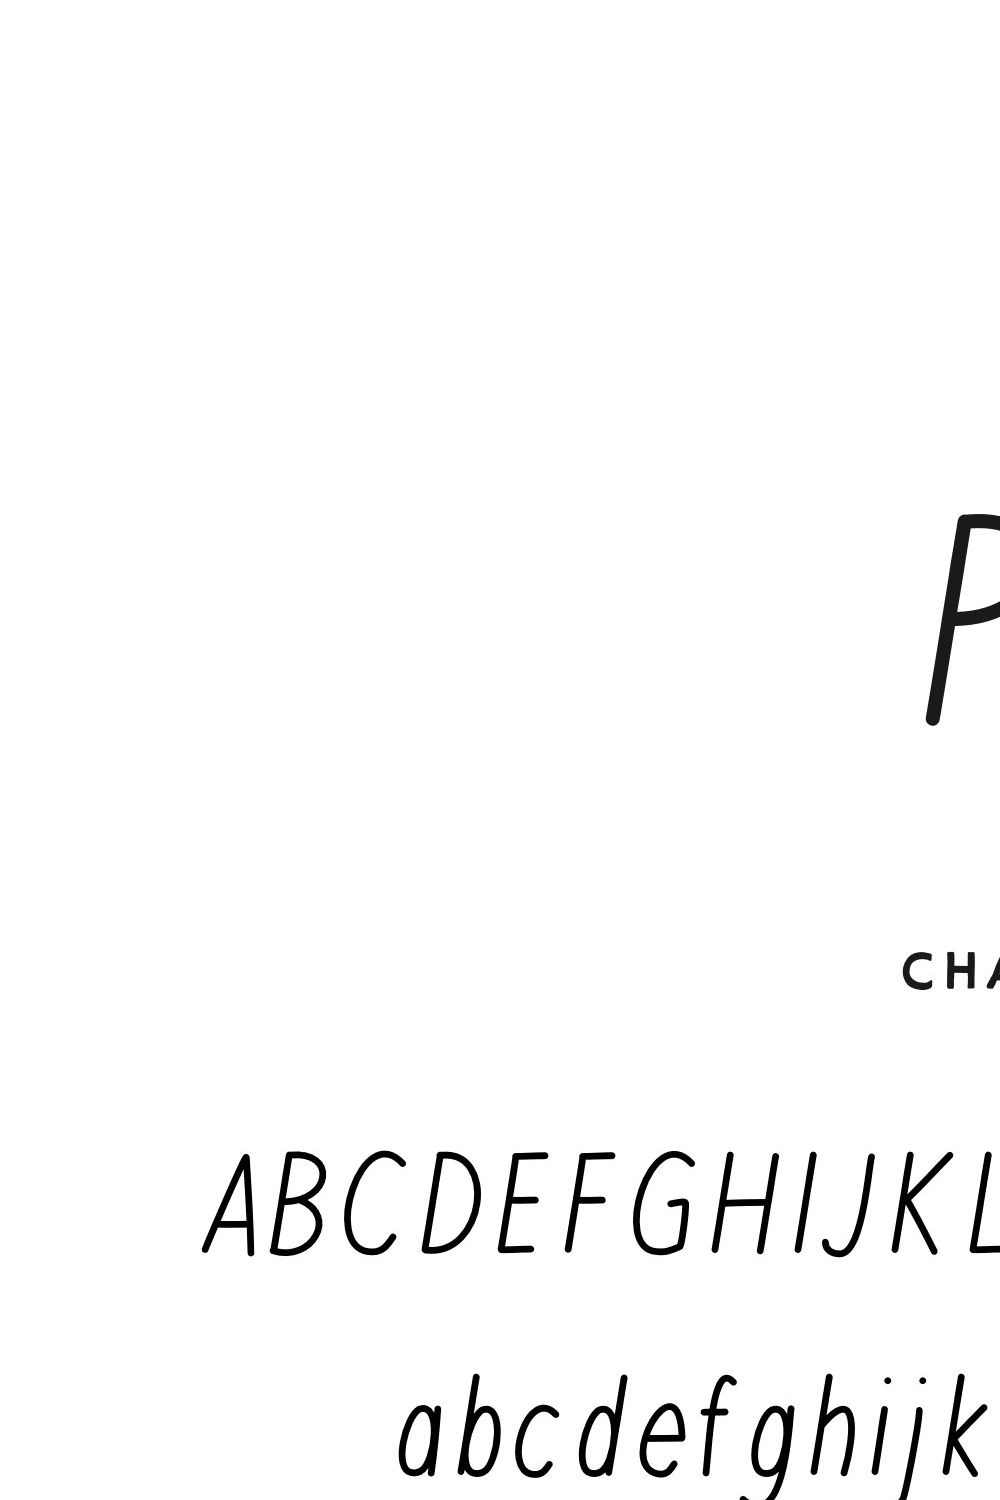 Pisa — A Leaning Monoline Sans Serif pinterest preview image.